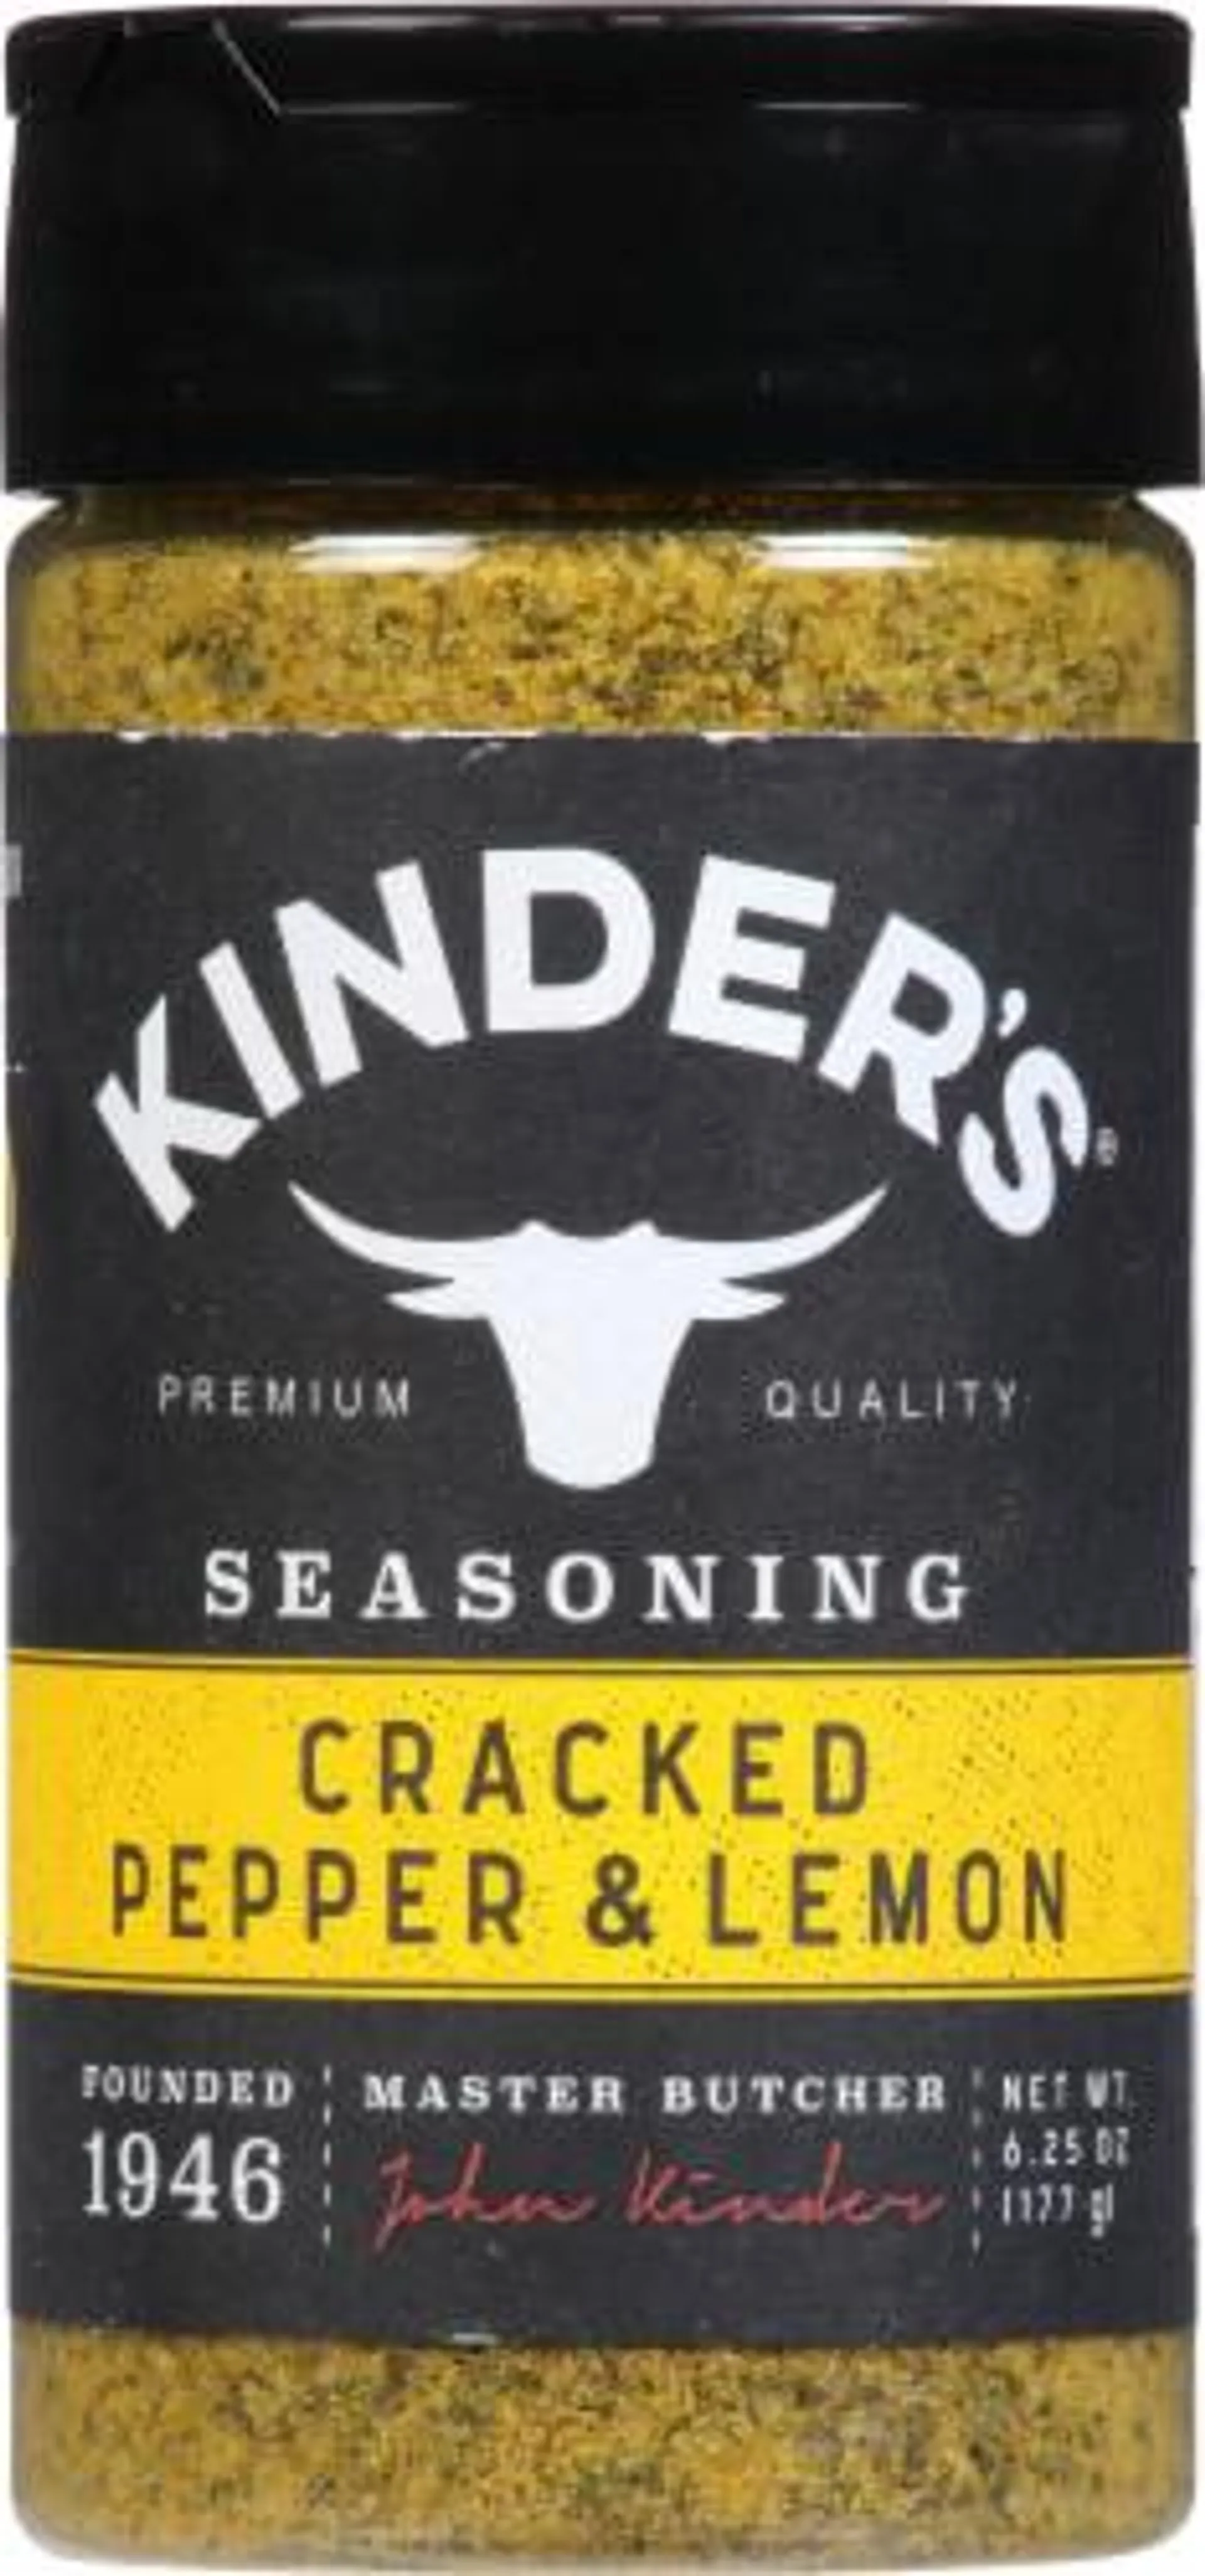 Kinder's® Cracked Pepper & Lemon Seasoning